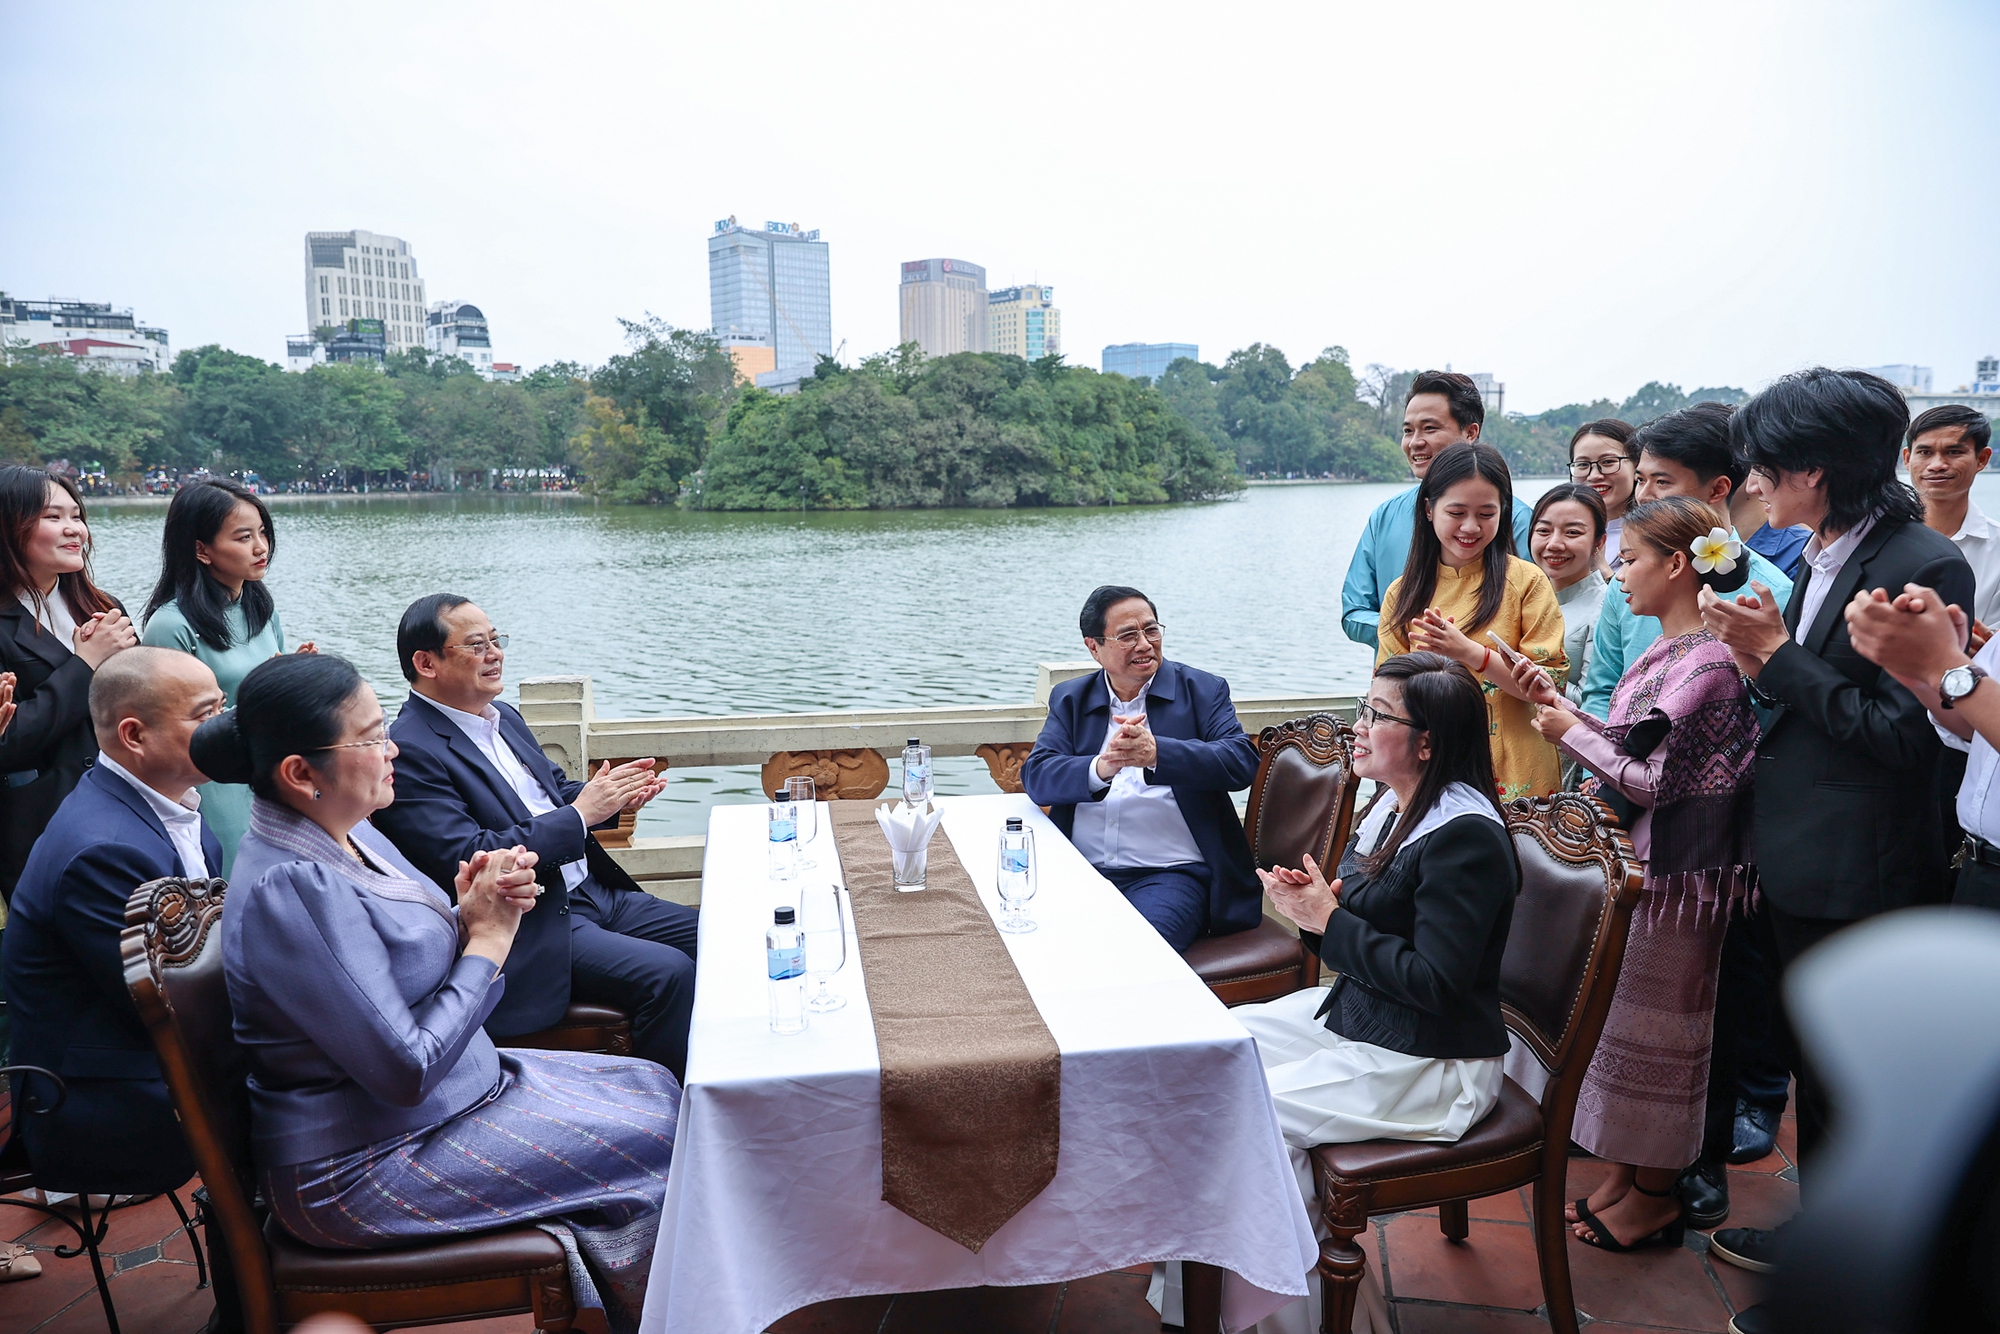 Thủ tướng Phạm Minh Chính, Thủ tướng Lào Sonexay Siphandone cùngHai Thủ tướng và hai Phu nhân cùng sinh viên thưởng thức cà phê, kem tại nhà hàng ven hồ - Ảnh: VGP/Nhật Bắc hai Phu nhân thăm đền Ngọc Sơn, hồ Hoàn Kiếm- Ảnh 10.